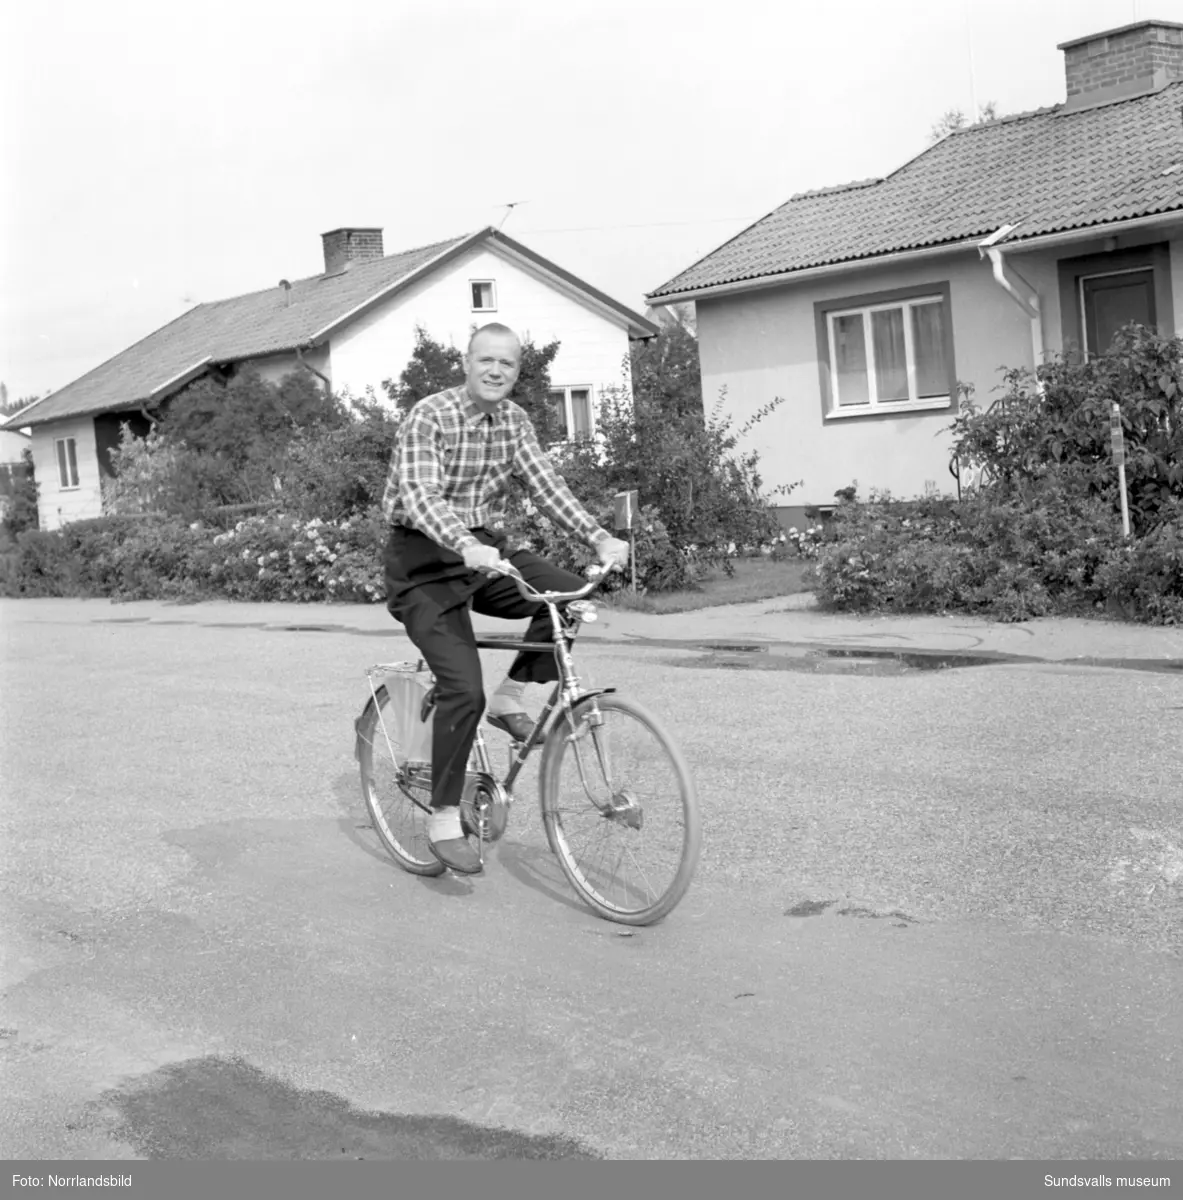 Direktör Kurt Arnevall från Sundsvall på bilder för en kampanj för PK-banken. Simning, tennis, gräsklippning och en cykeltur. Ervaco Annonsbyrå AB Stockholm.